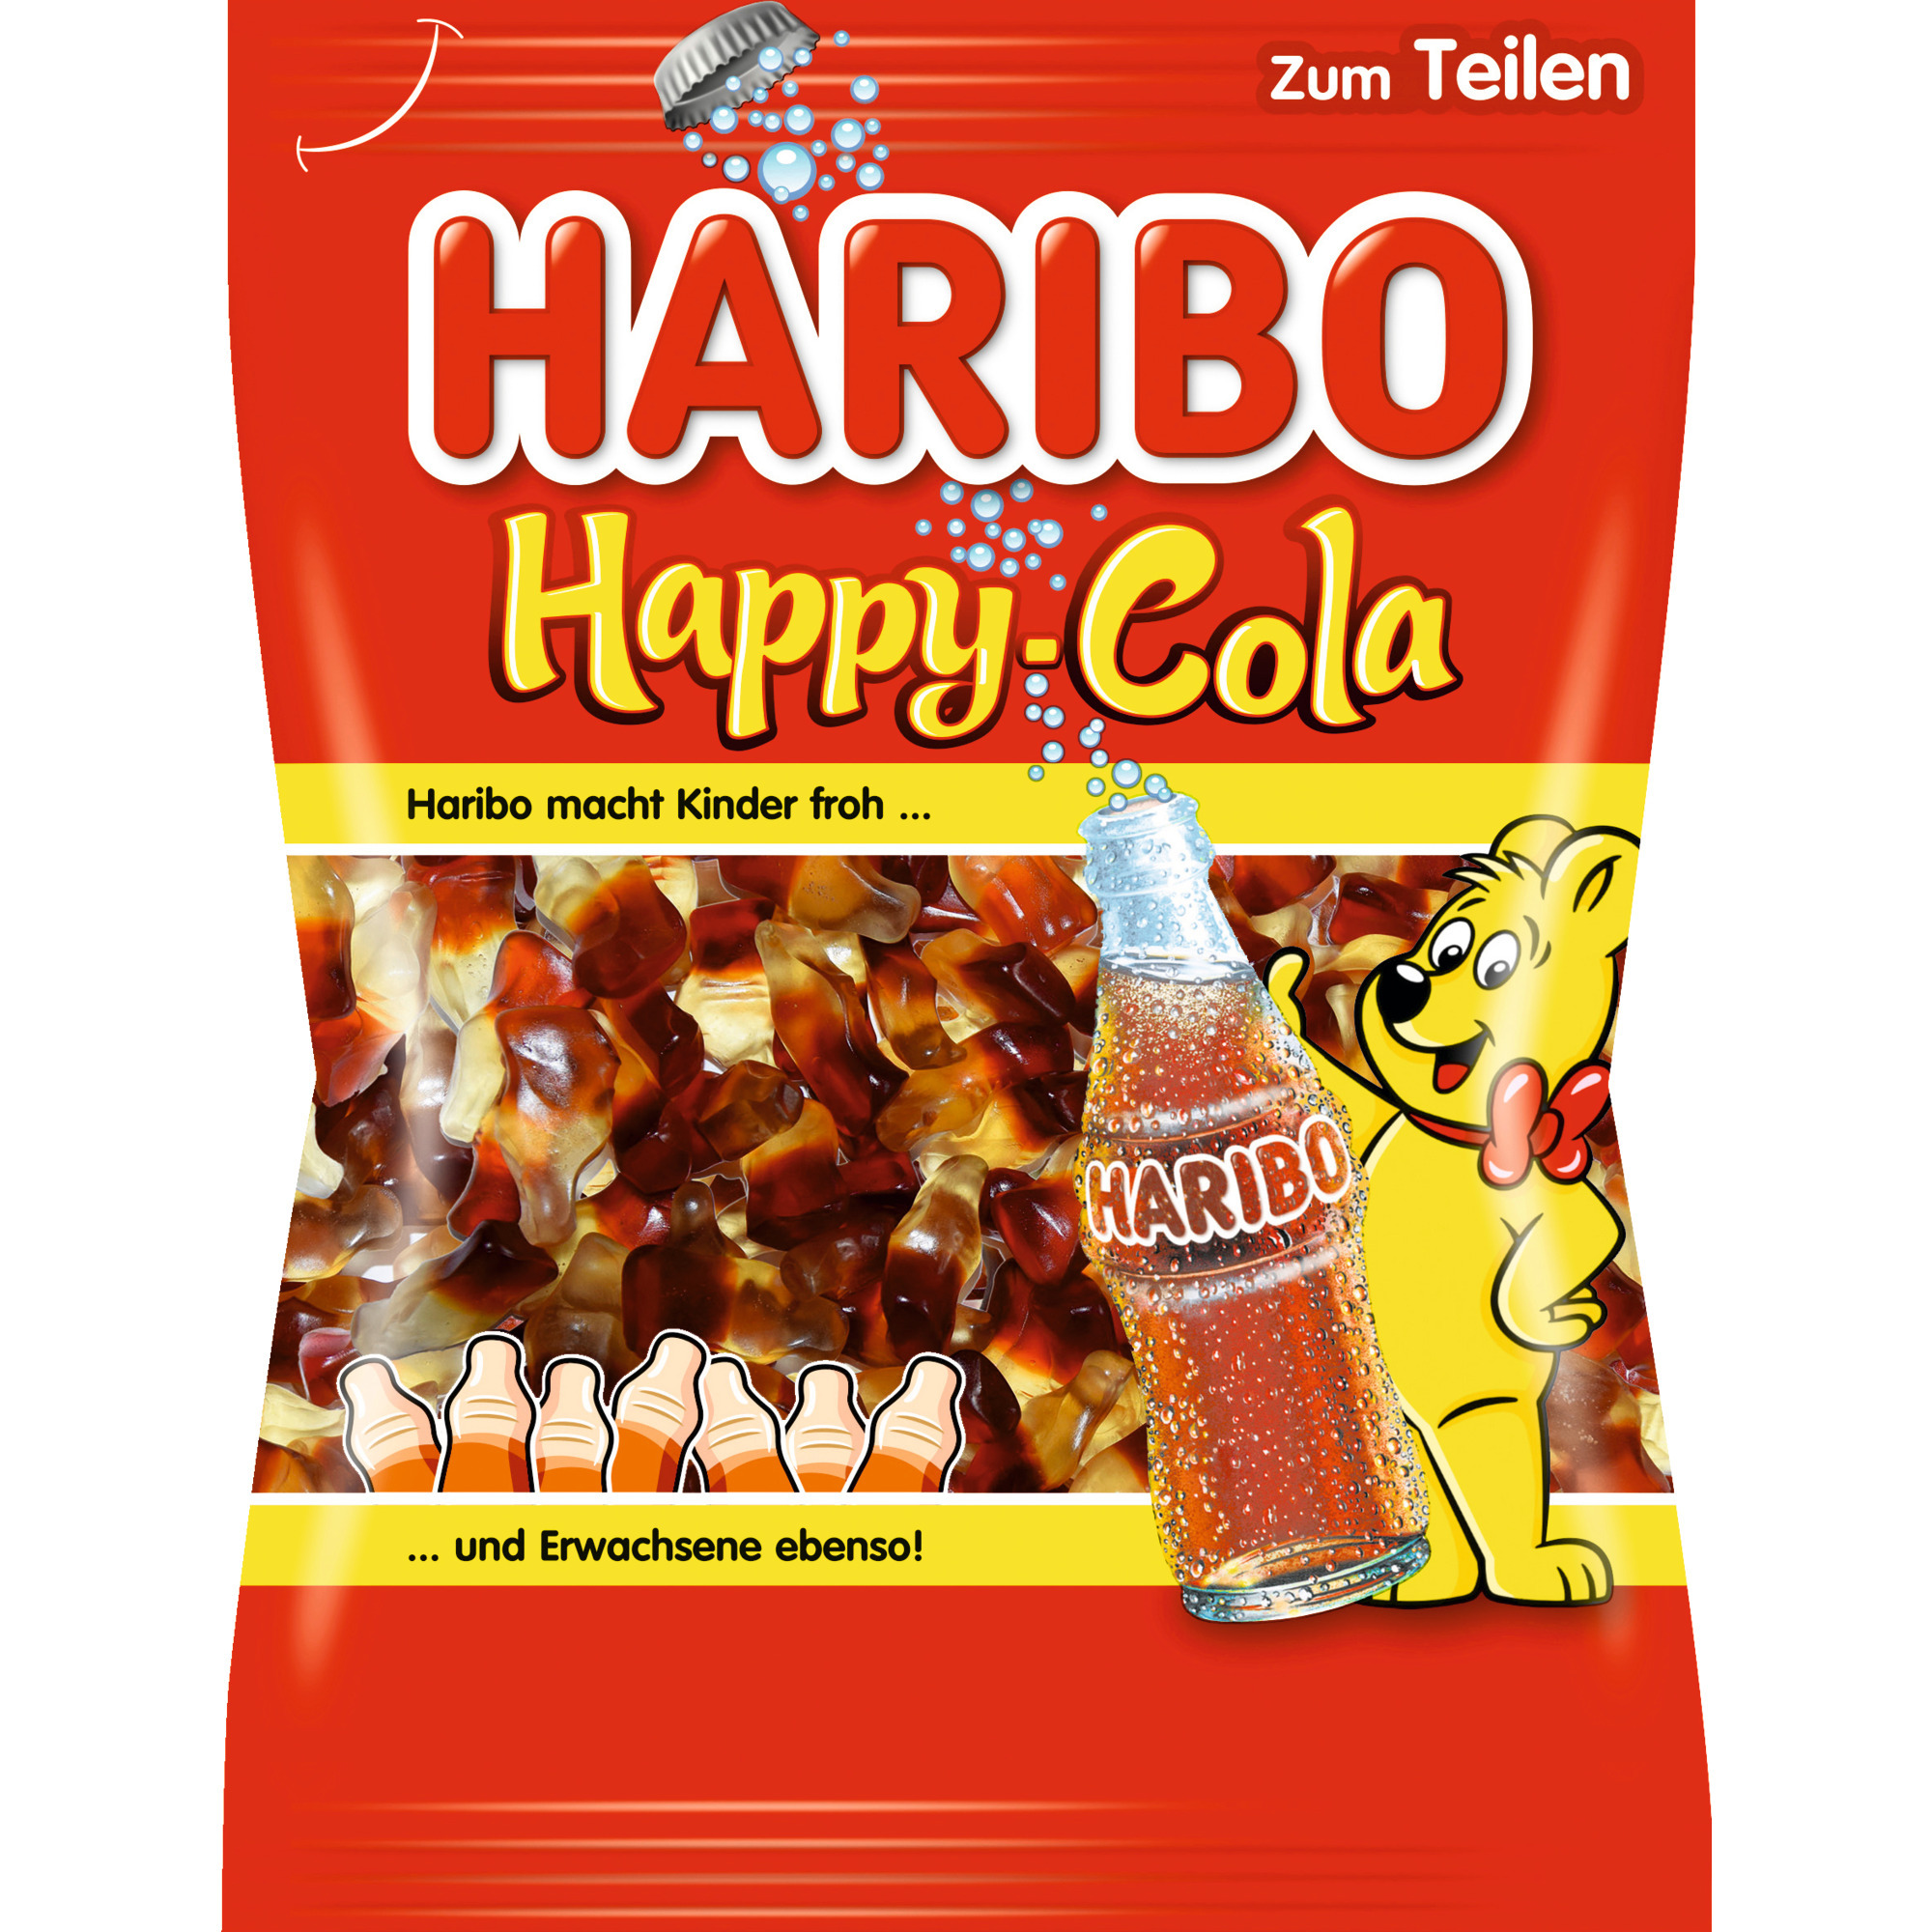 Haribo vrecko 200g, Happy Cola